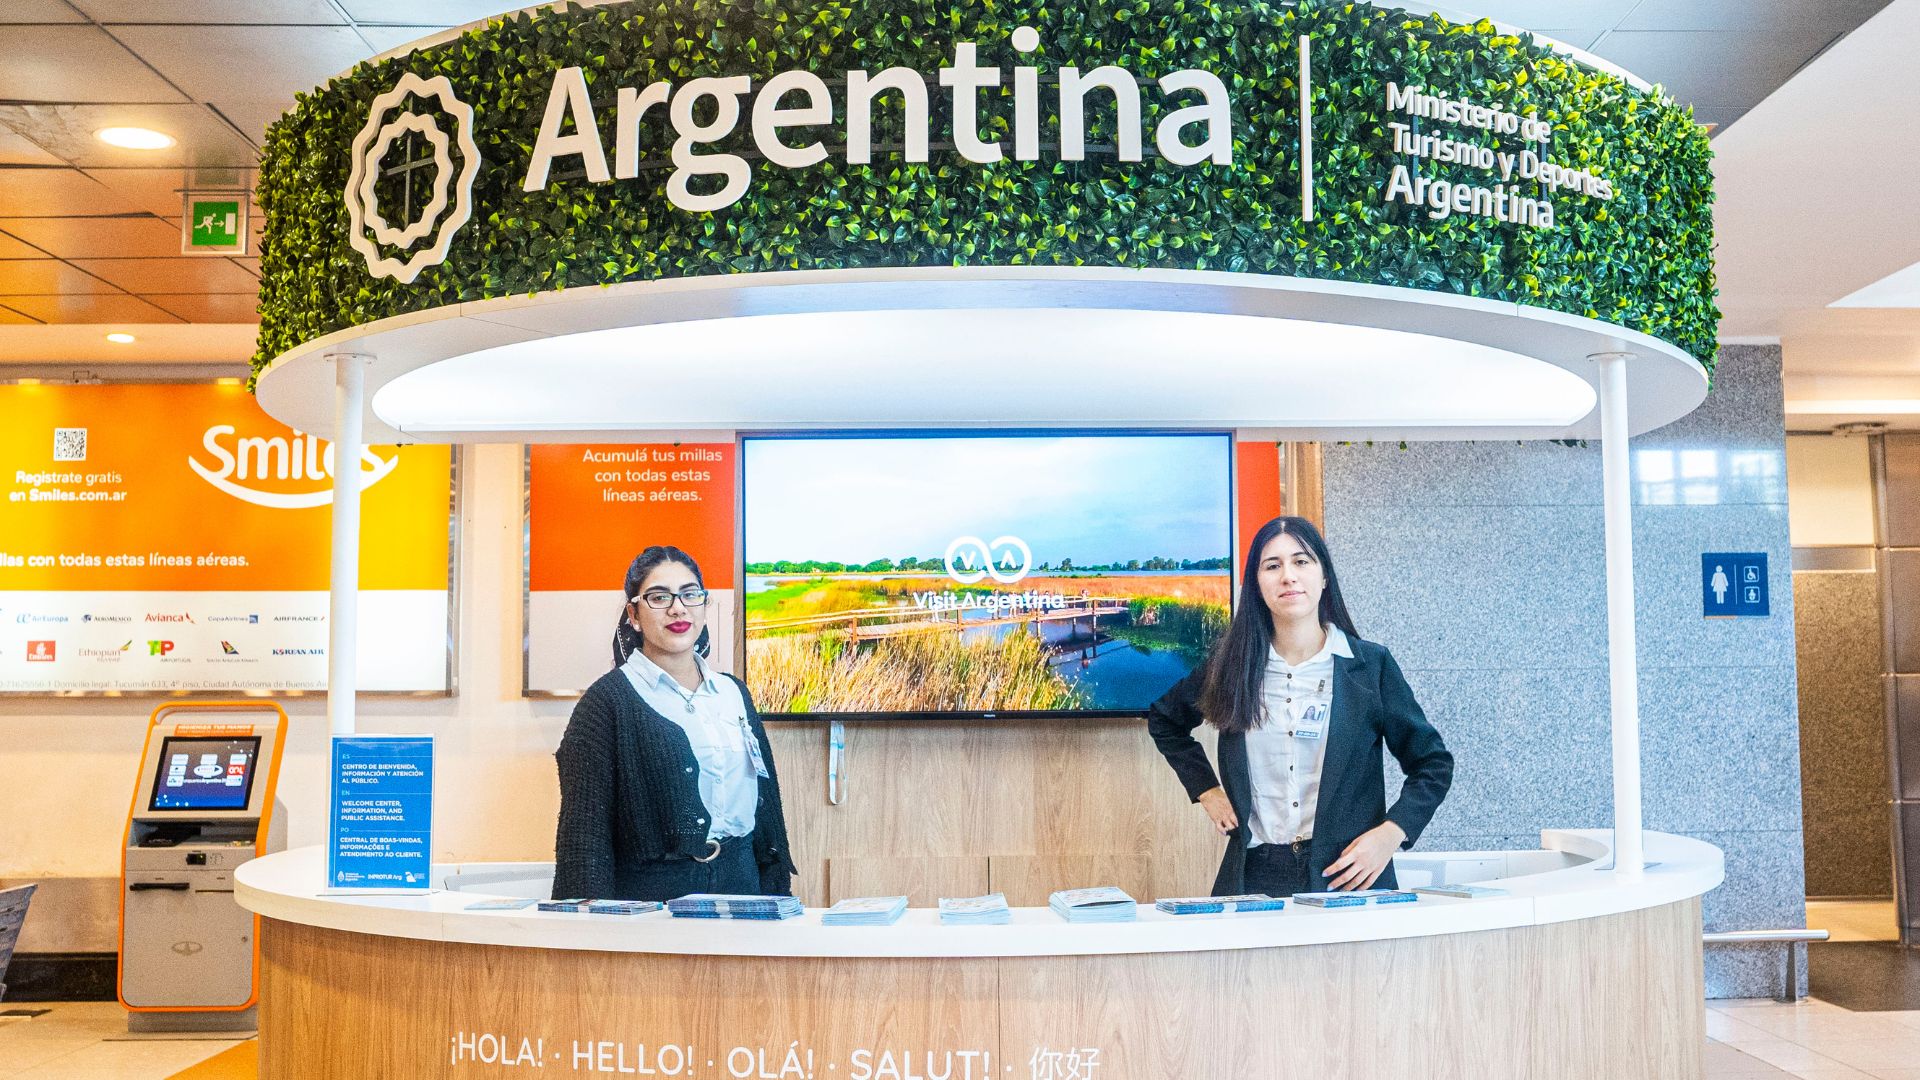 El Centro de Información Turística y de Atención al Público de aeropuerto de Ezeiza (Visit Argentina)